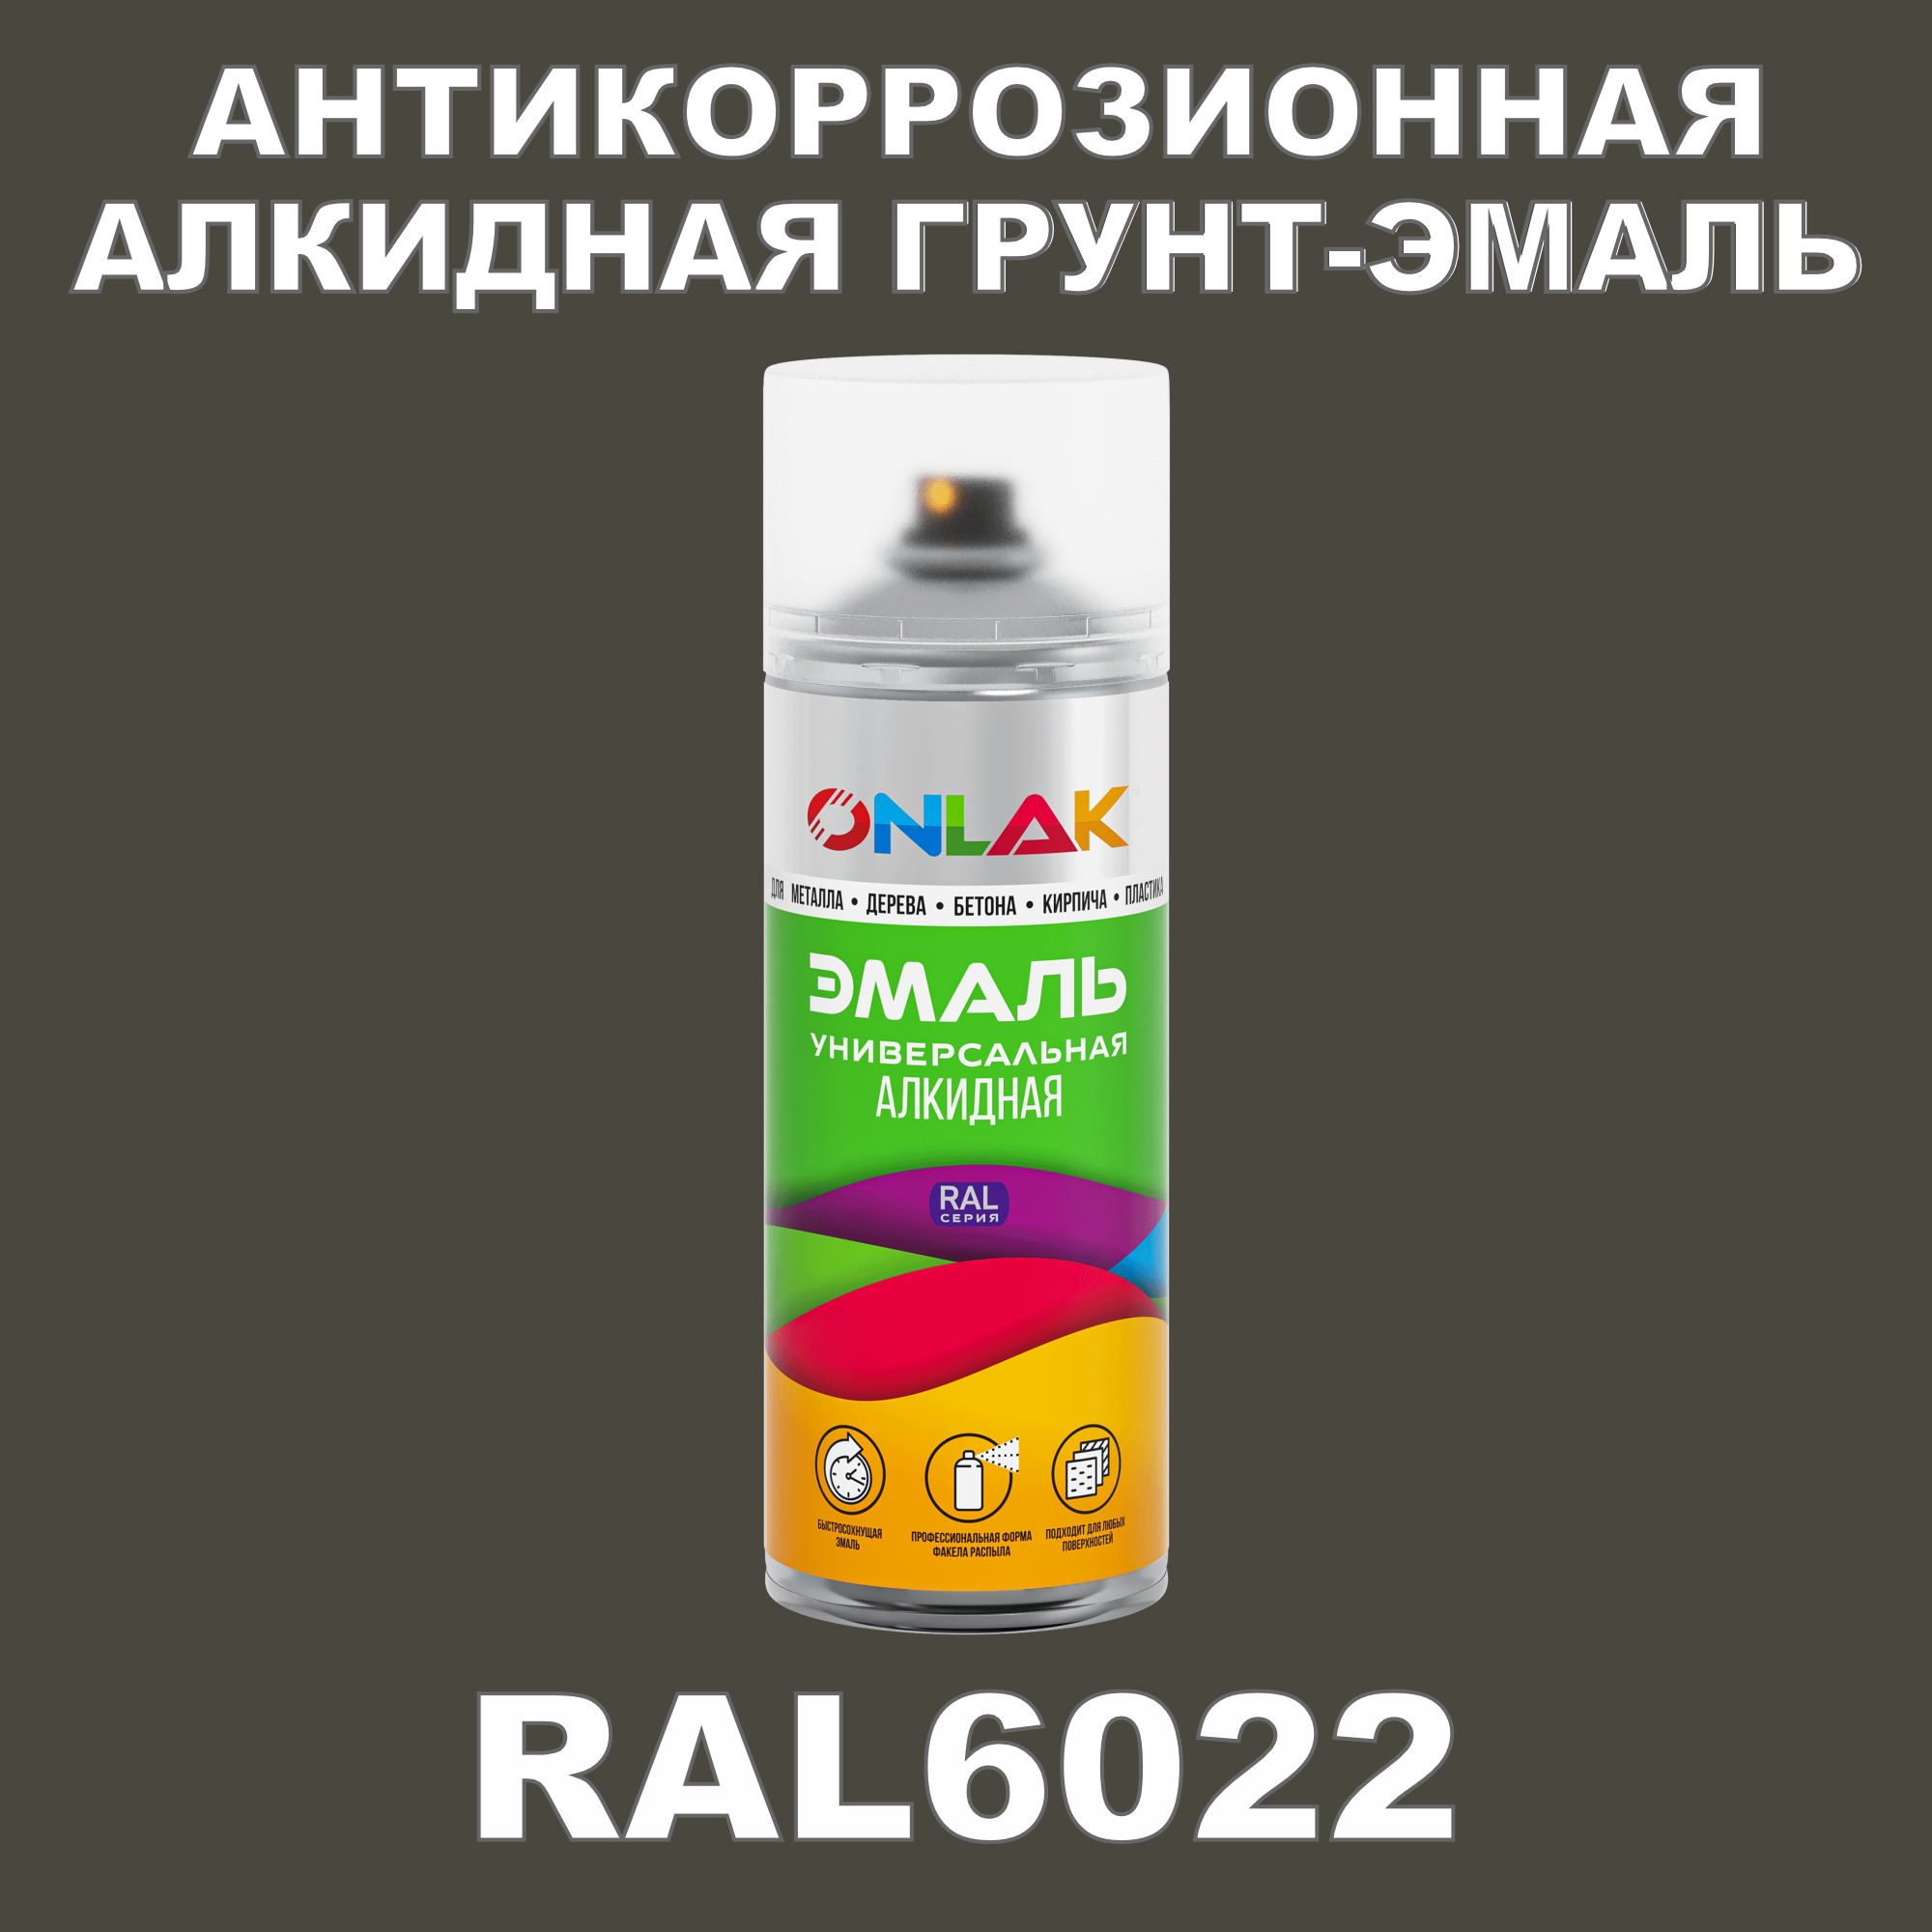 Антикоррозионная грунт-эмаль ONLAK RAL6022 полуматовая для металла и защиты от ржавчины